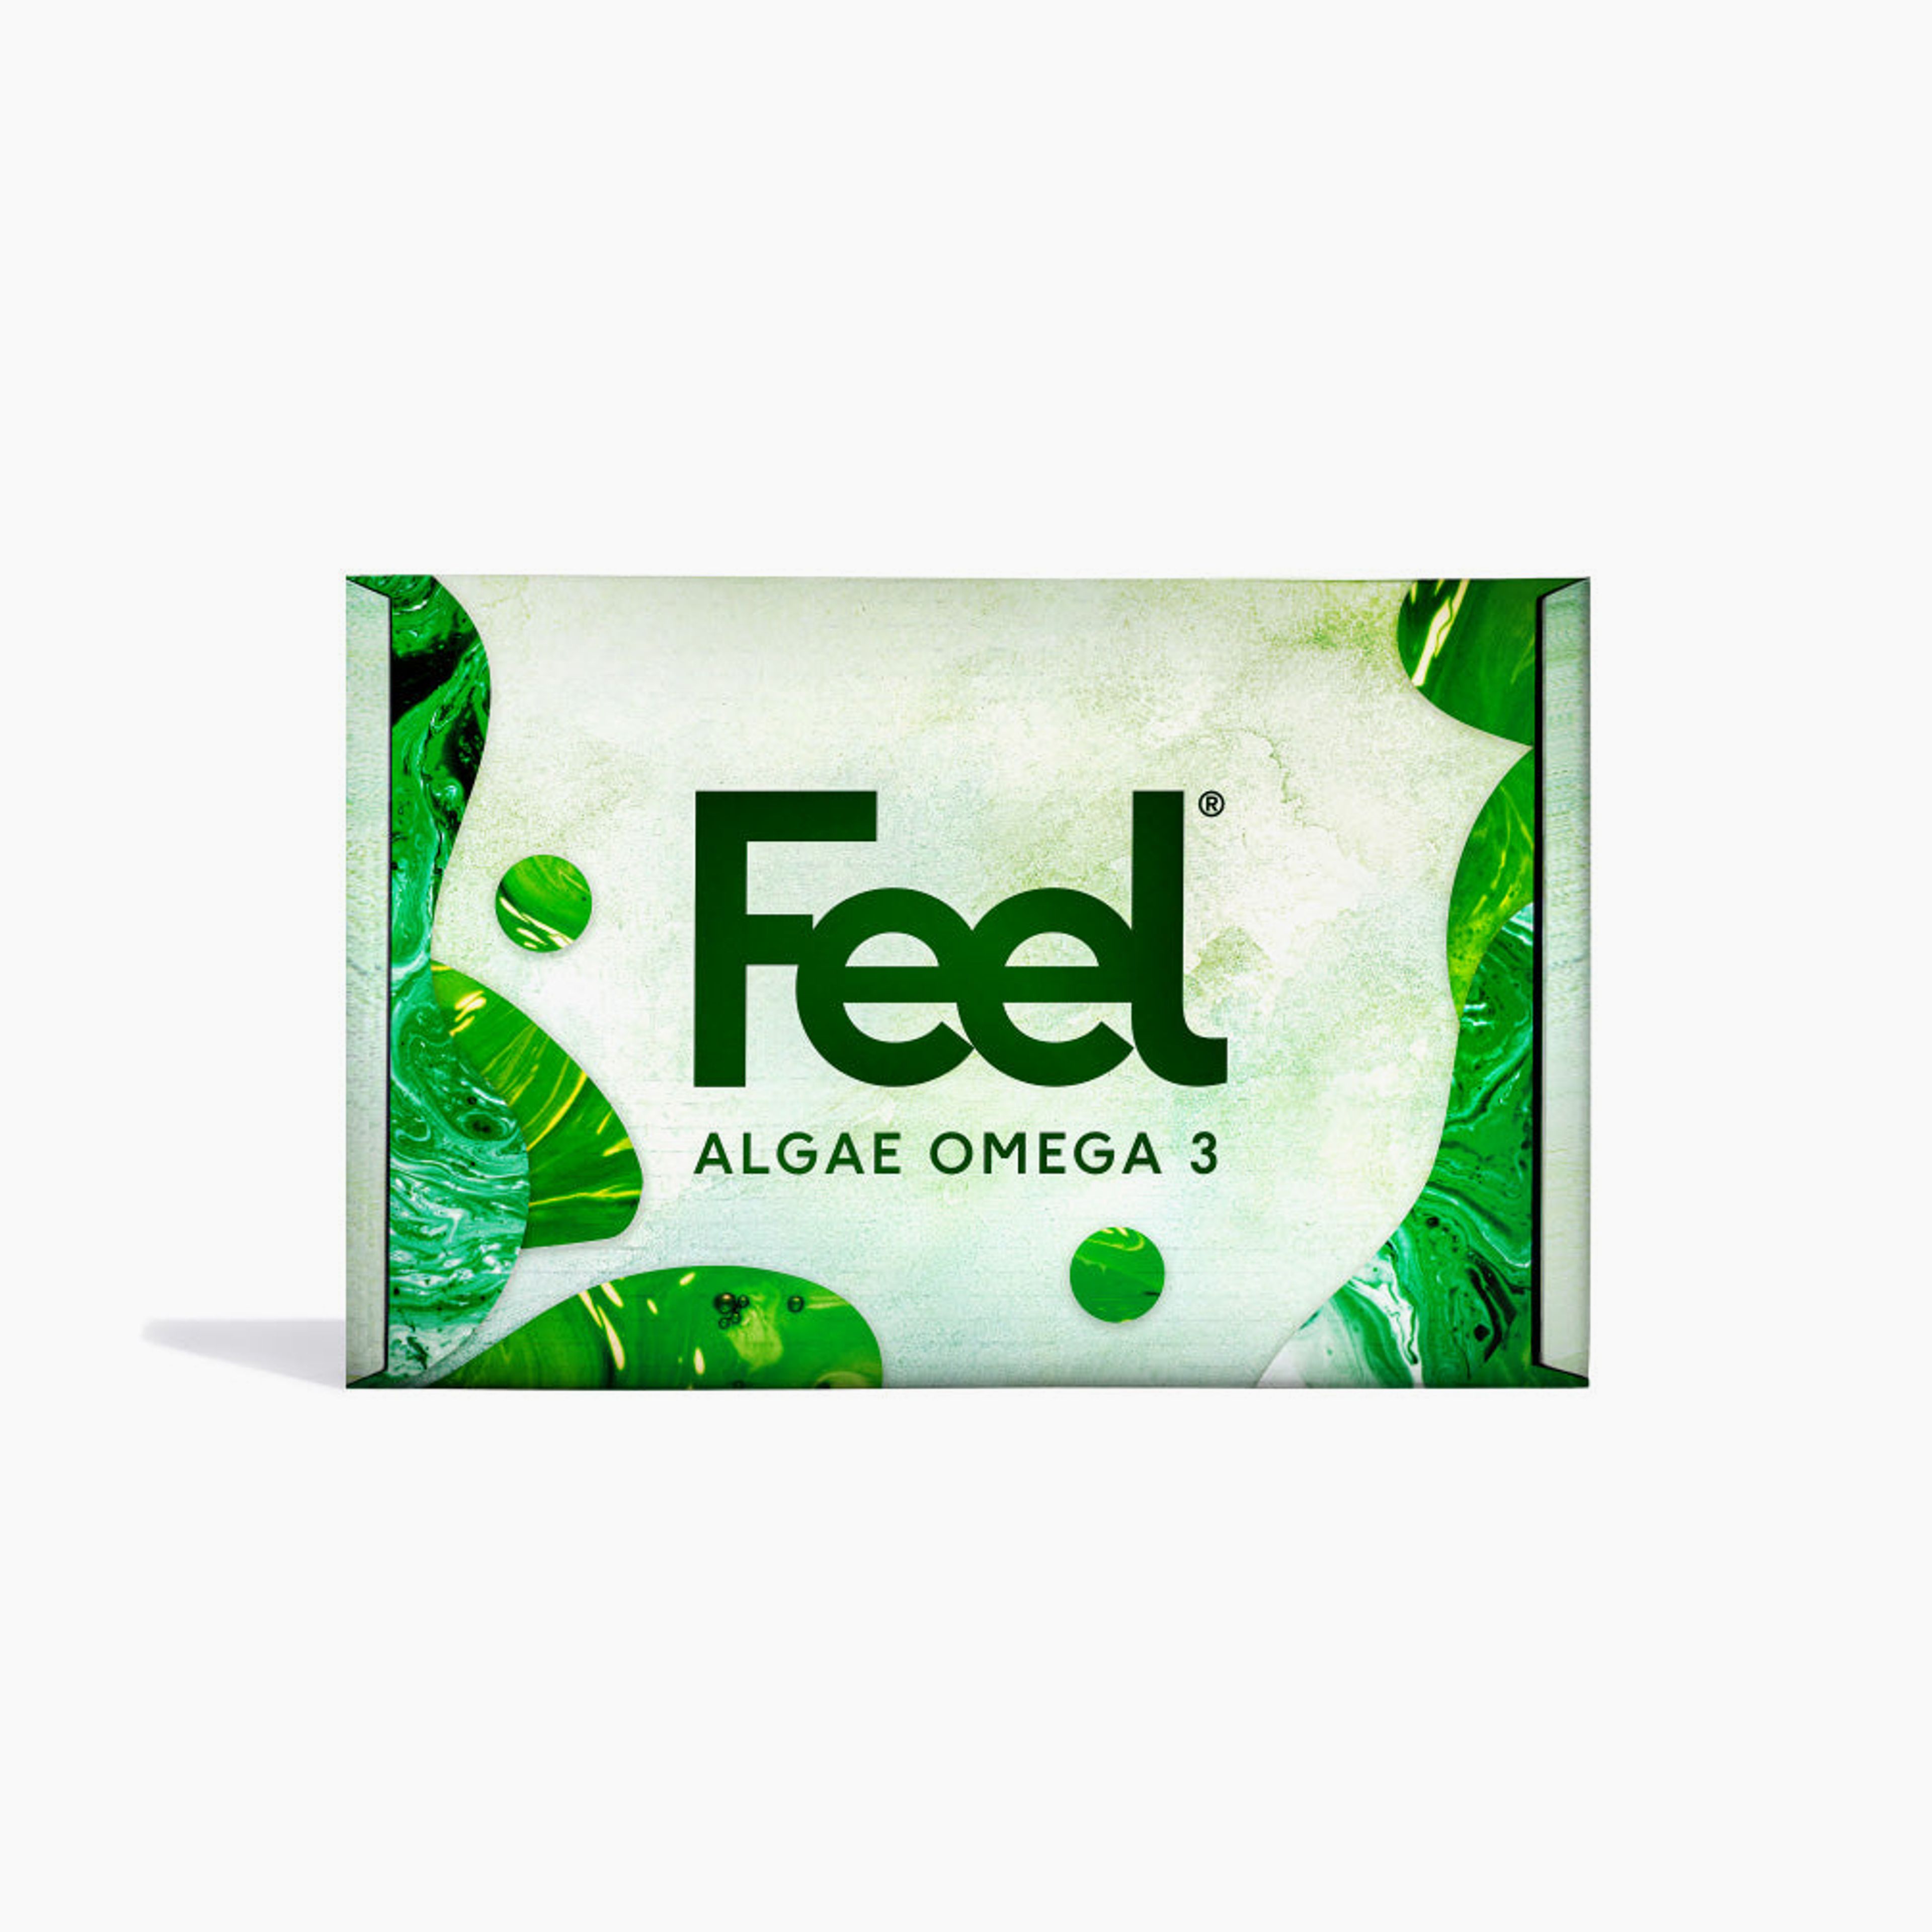 Feel Omega 3